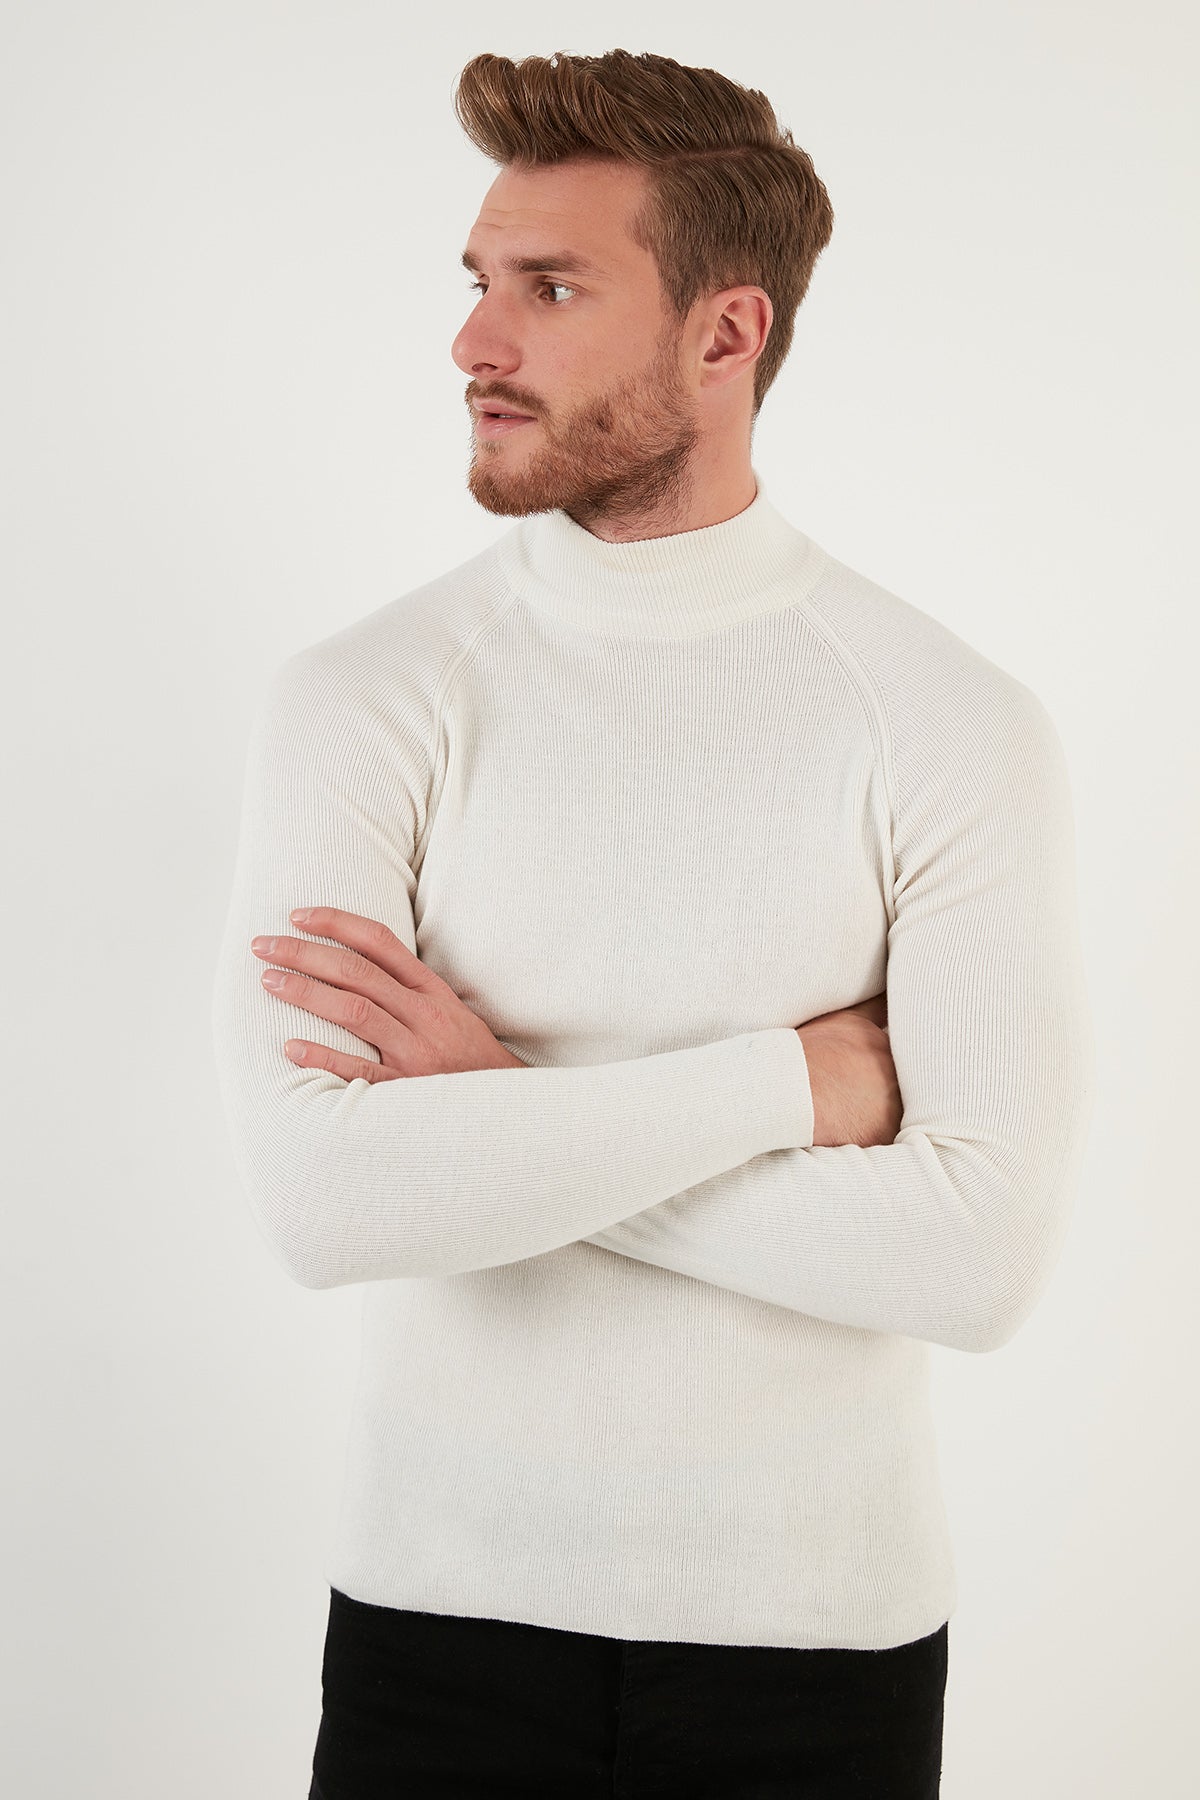 Buratti Slim Fit Turtleneck Cotton Knitwear Men's Sweater - MAROON